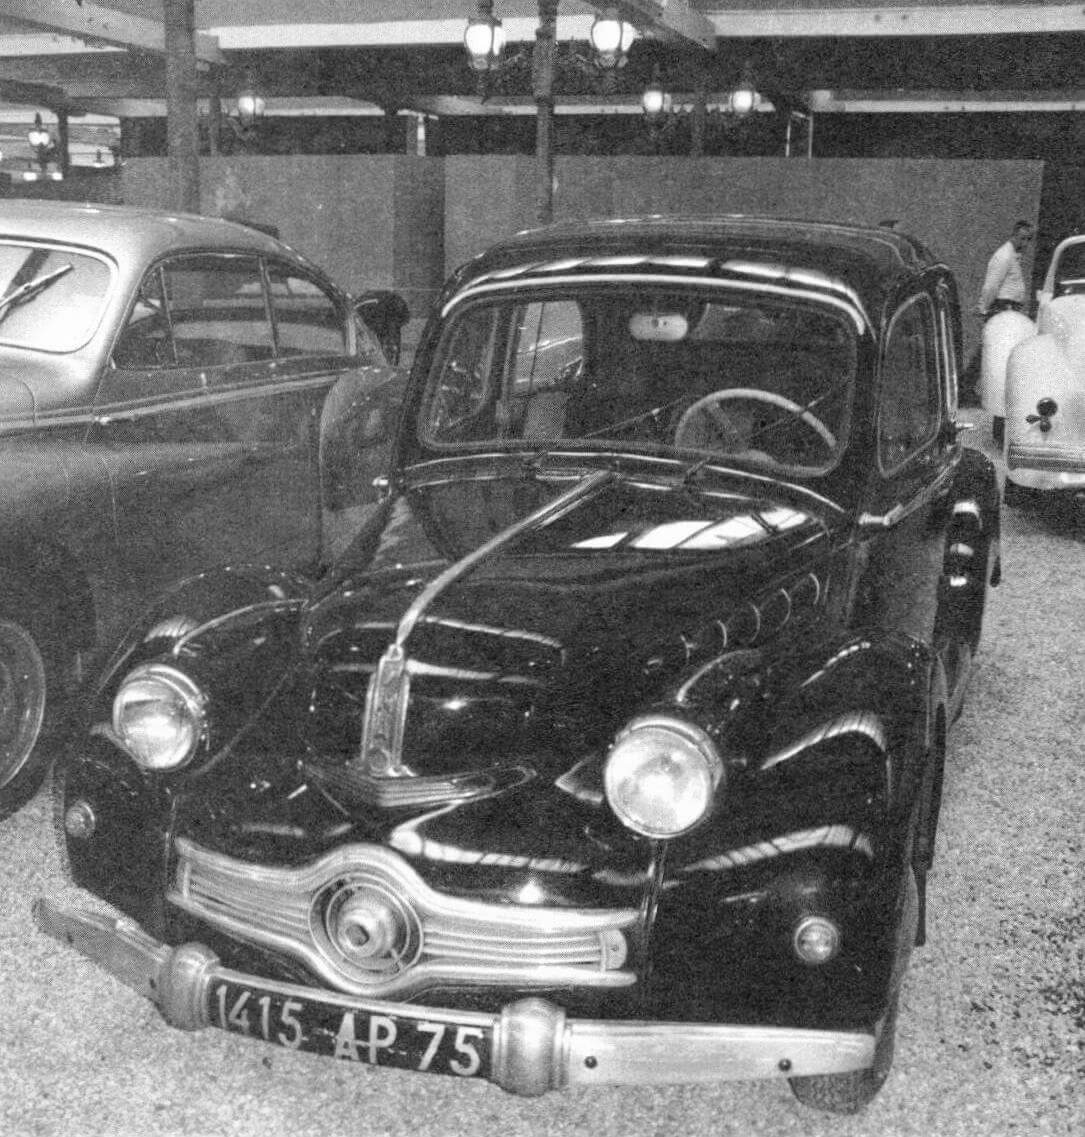 Panhard Dyna Х86 1953 года из коллекции Национального автомобильного музея Франции. Ранее этот автомобиль принадлежал Полю Панару